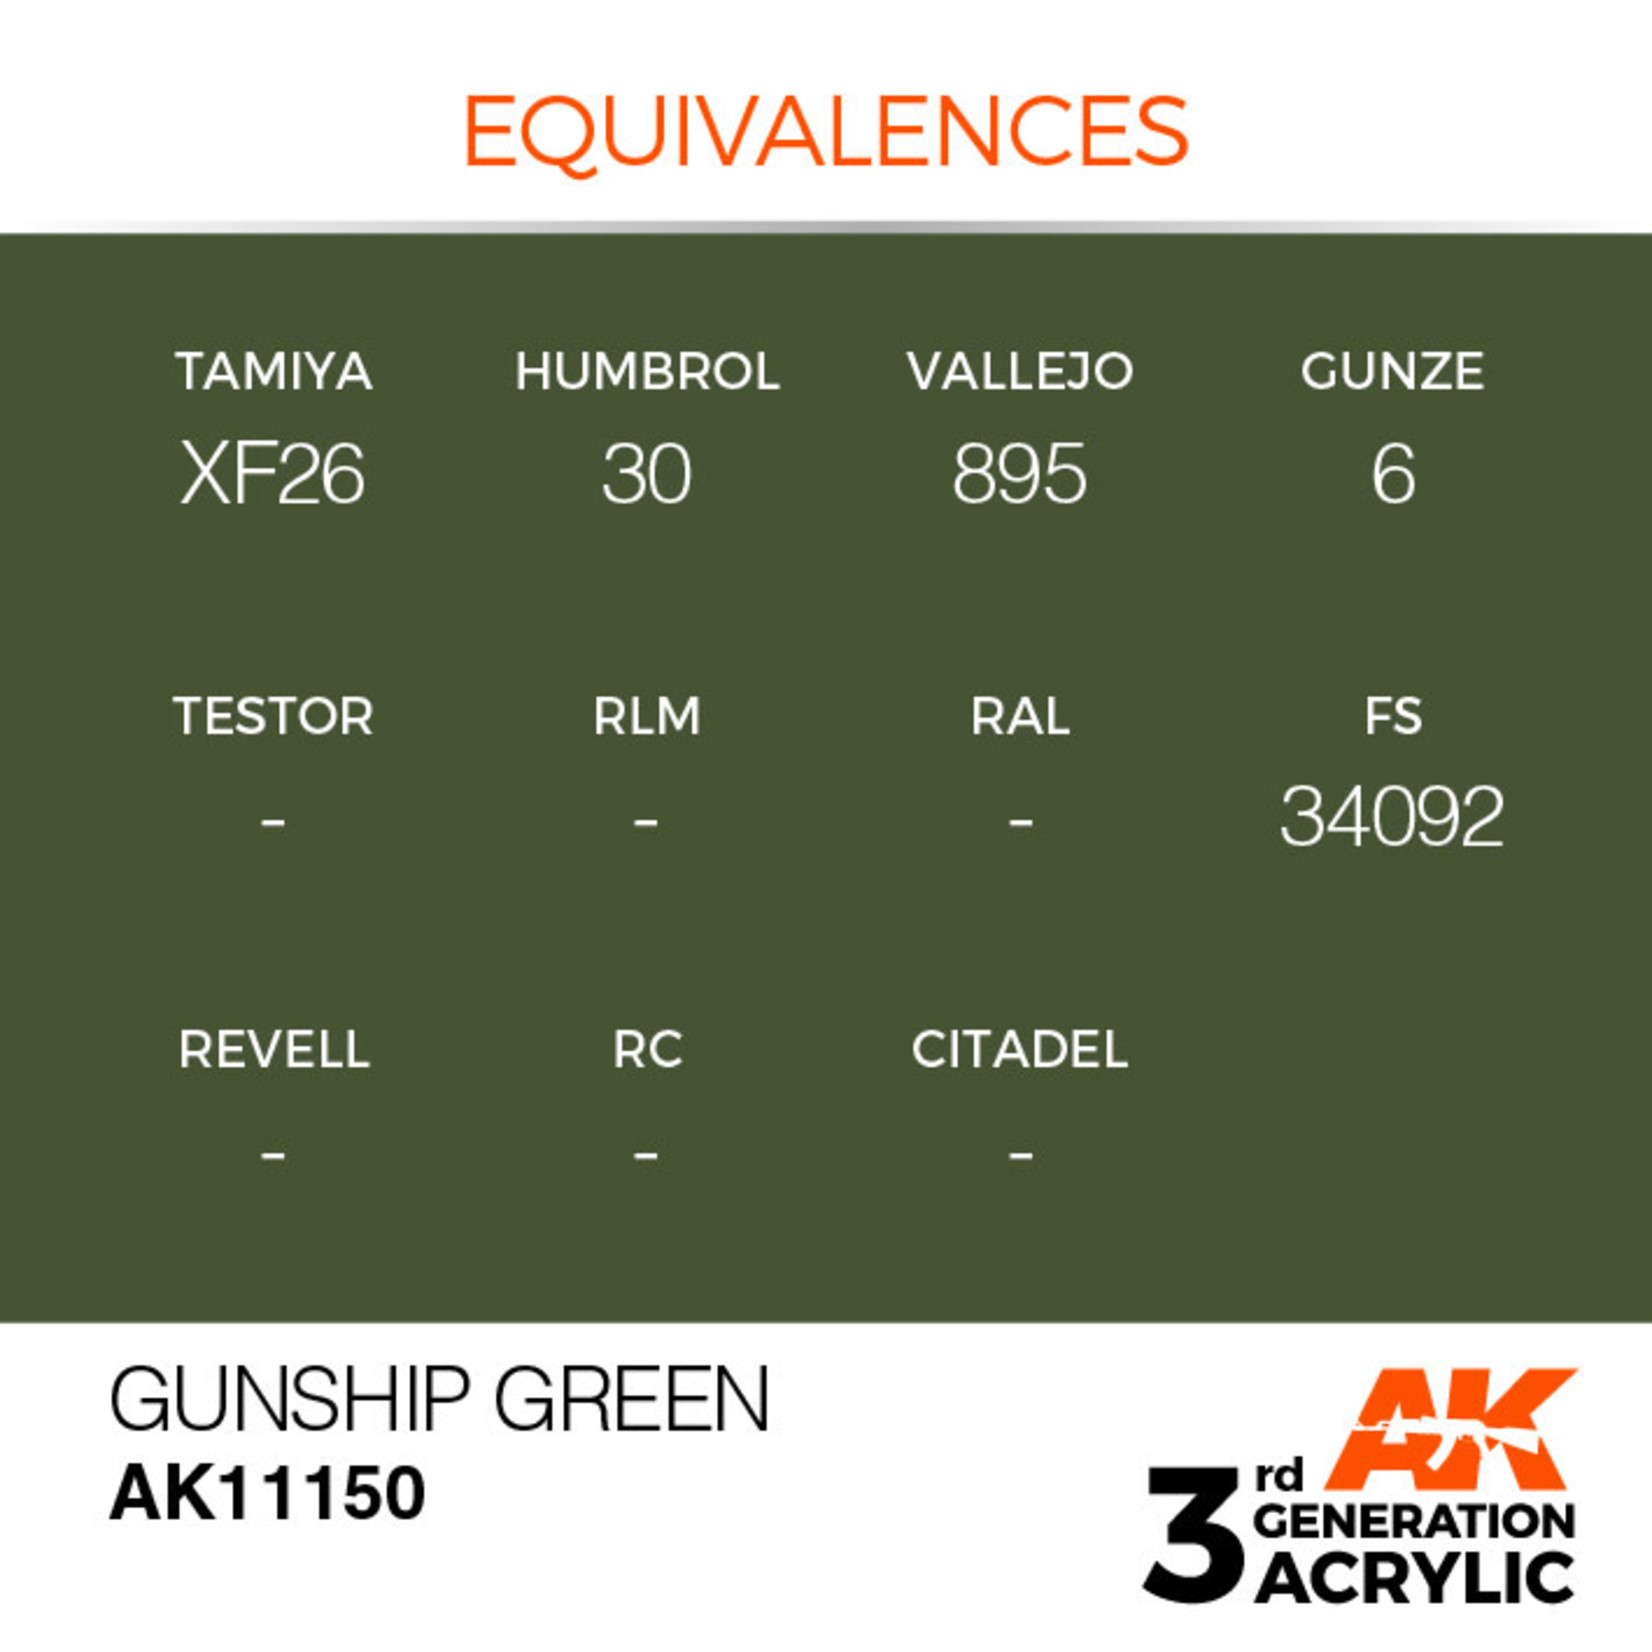 AK Interactive AK11150 3G Acrylic Gunship Green 17ml